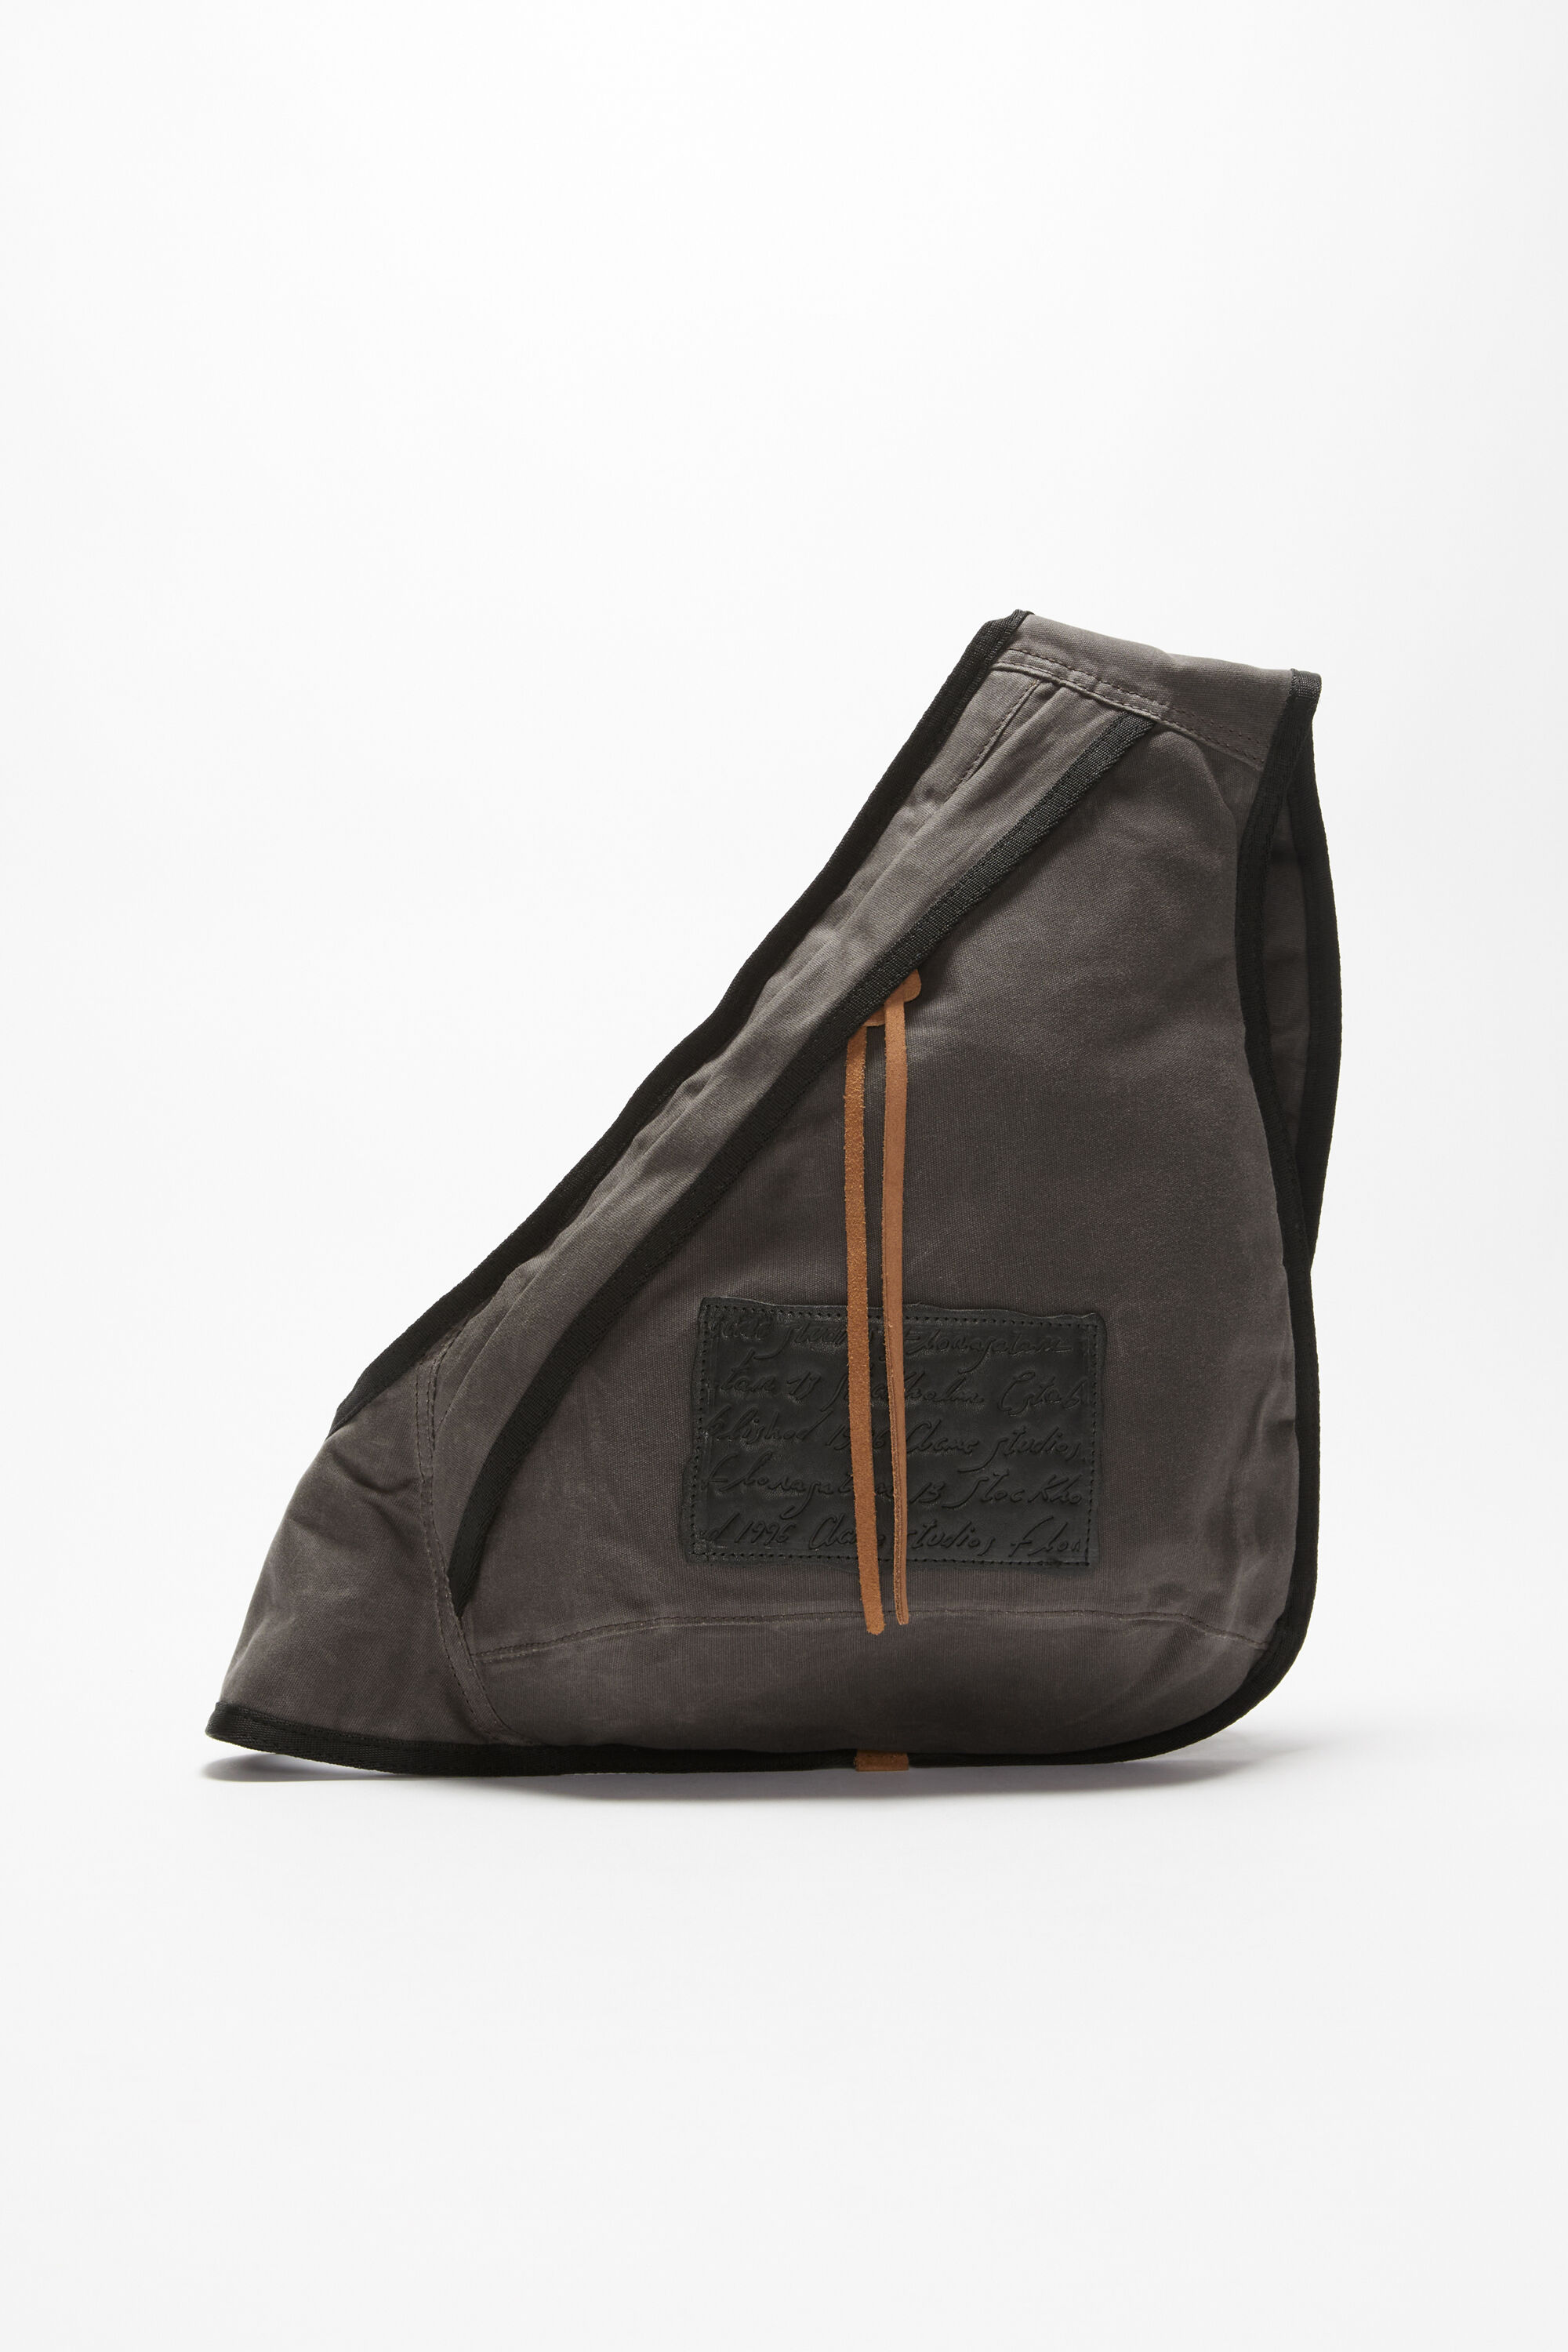 Acne Studios - Sling backpack - Grey/black